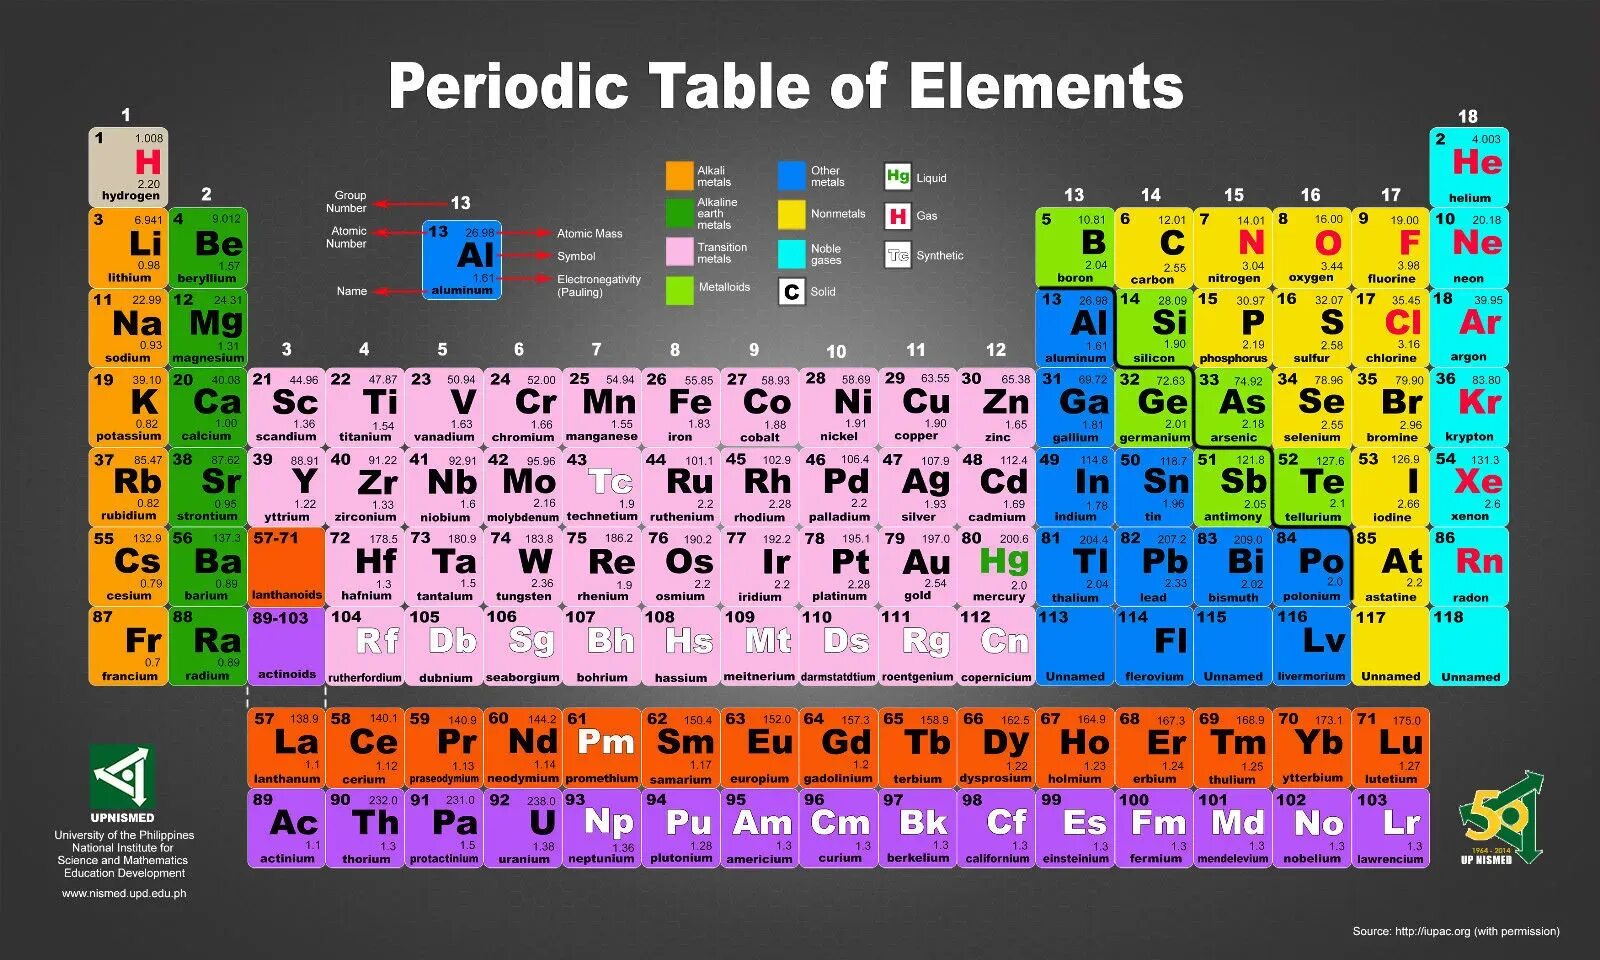 2 8 18 8 1 химический элемент. Table of Chemical elements of Mendeleev. Менделеев периодическая таблица химических элементов. Современная таблица Менделеева 118 элементов. Periodic Table of Chemical elements Mendeleev.